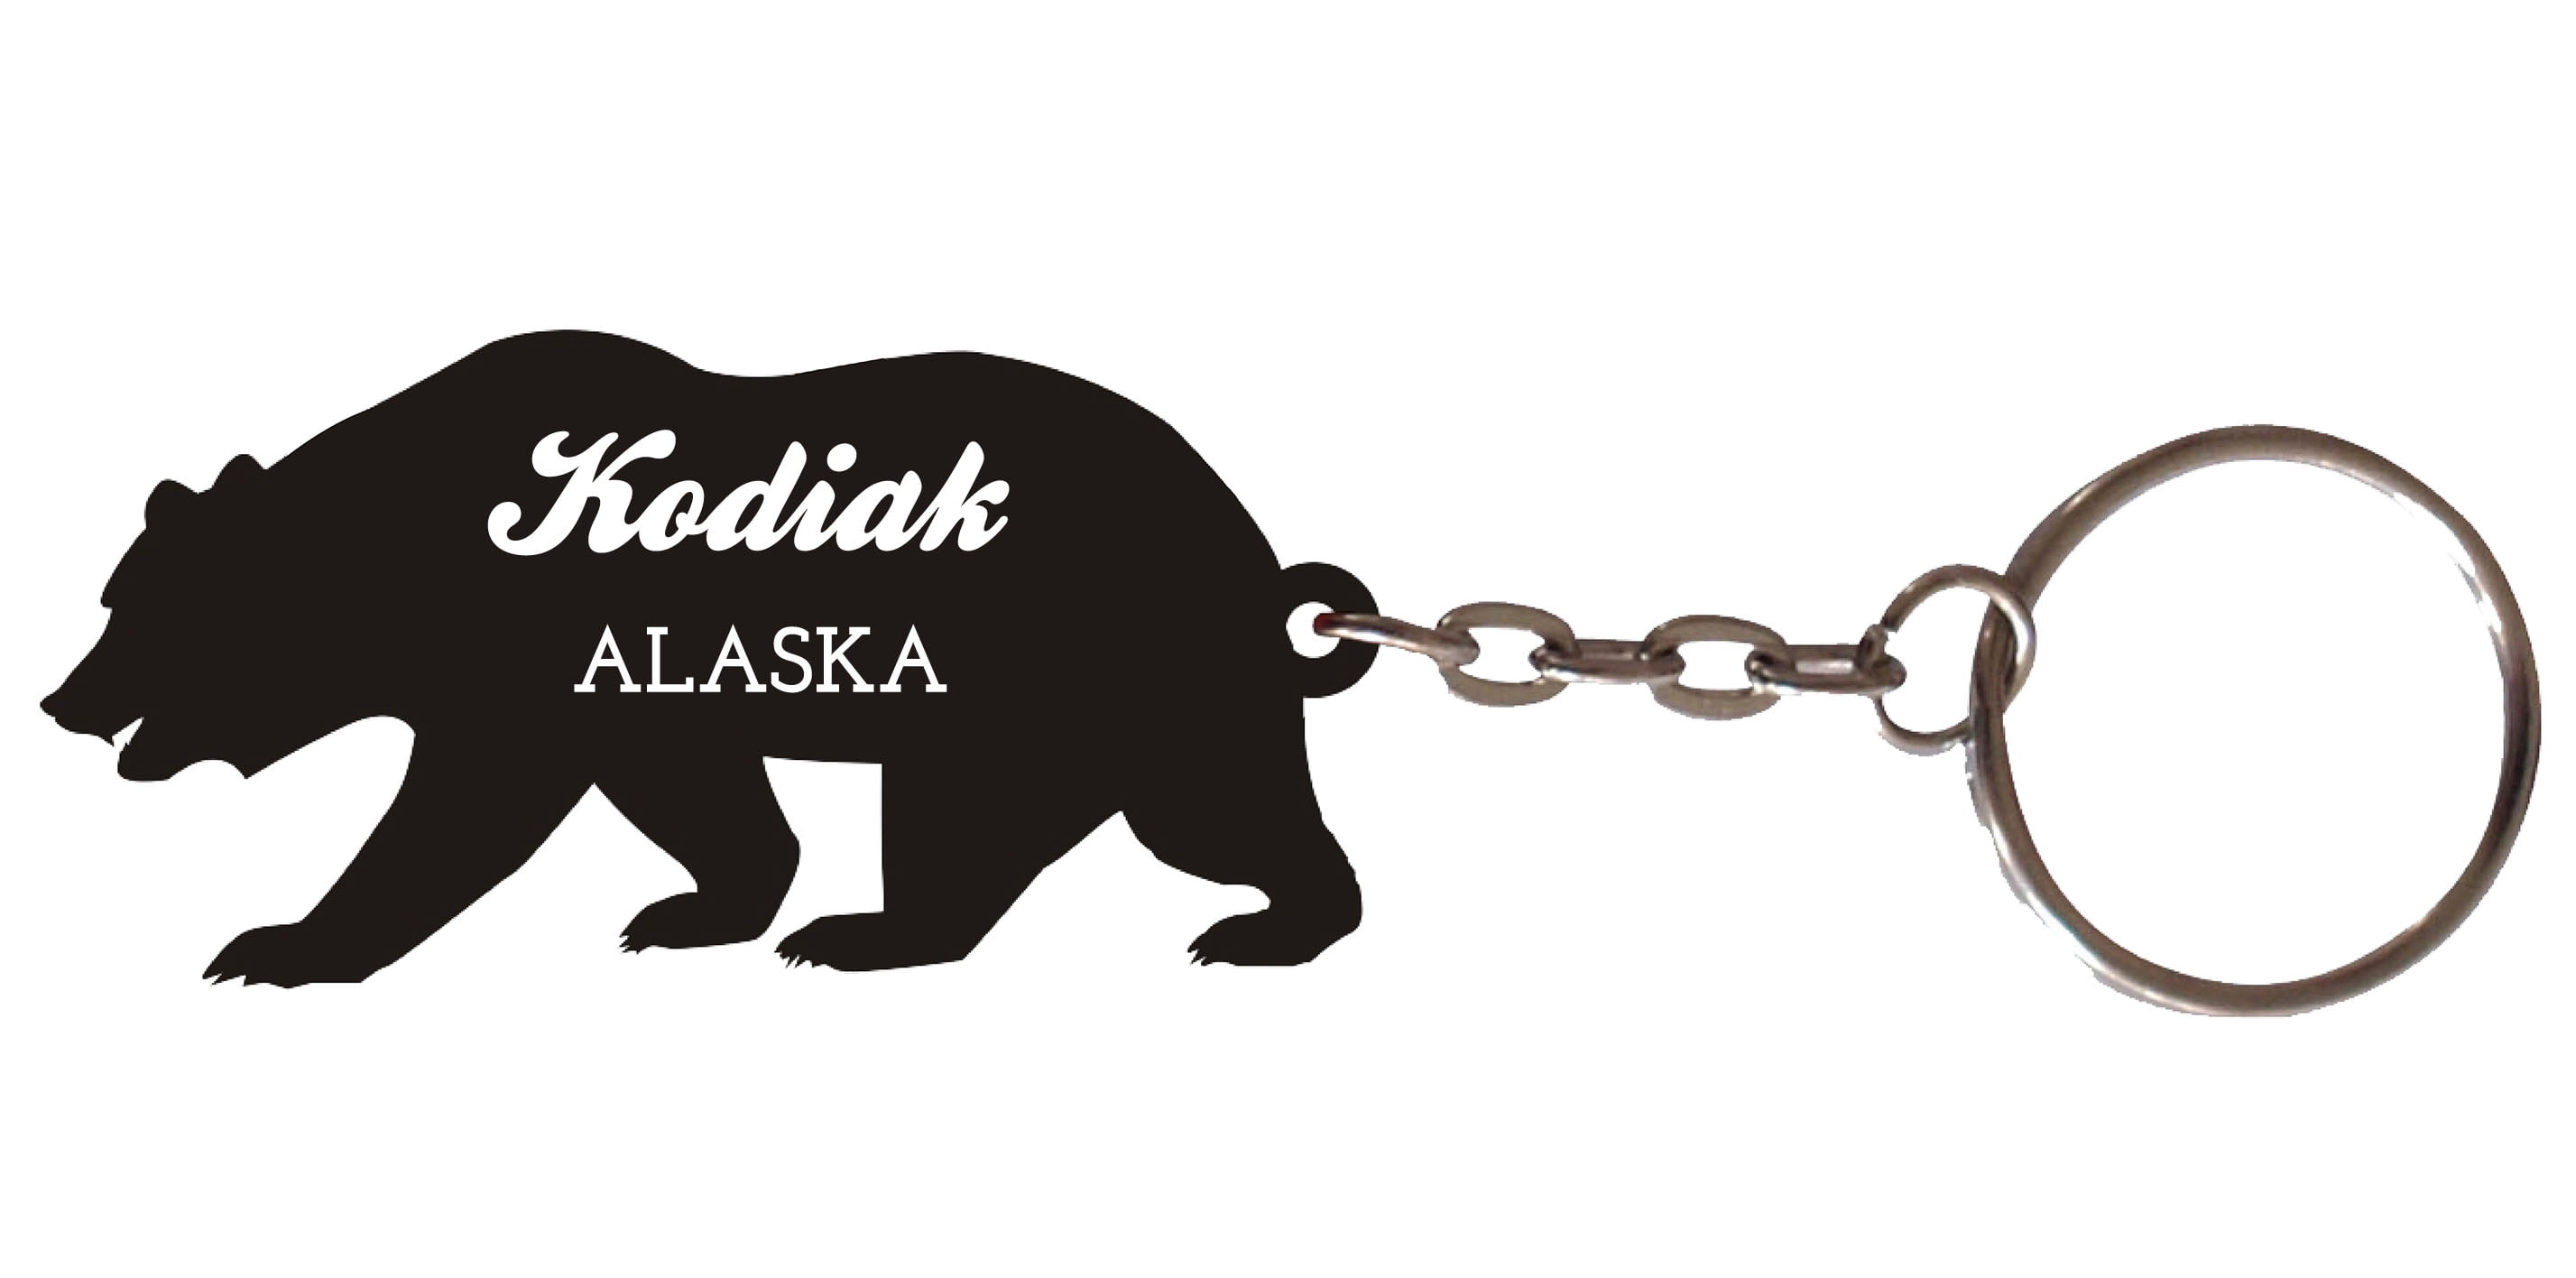 Alaska Souvenirs Keychain Carabiner Alaska